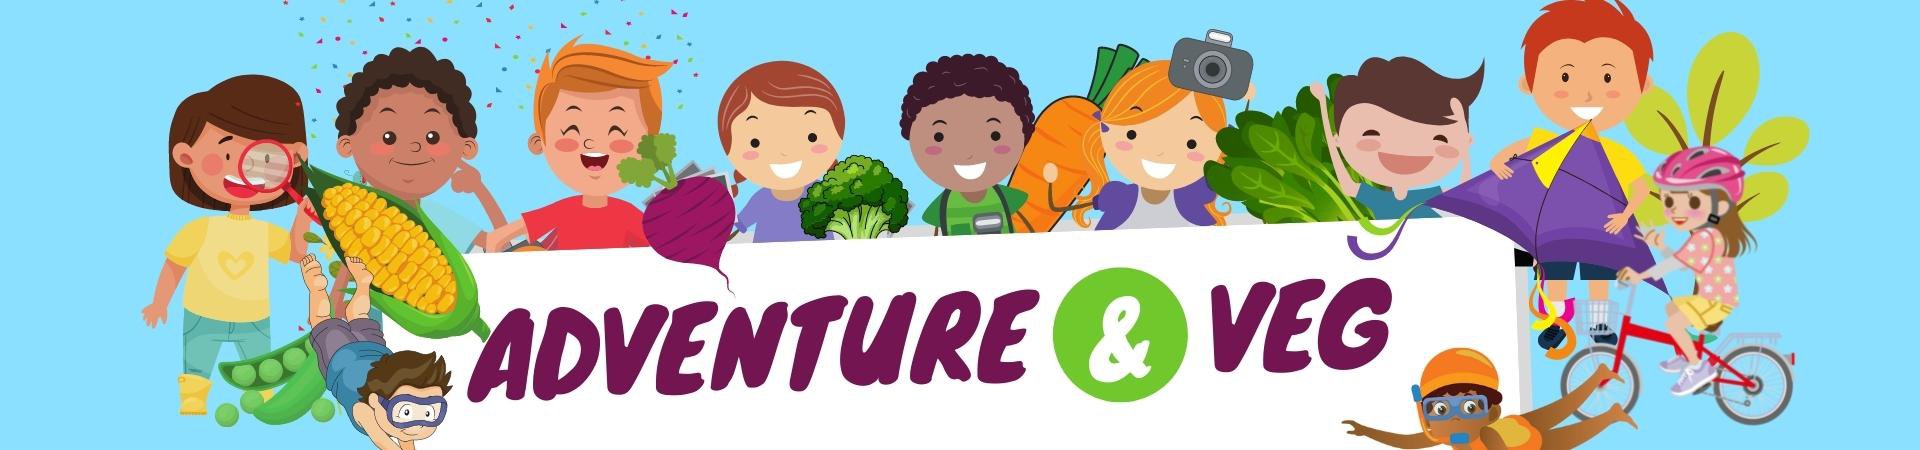 Adventure and veg program banner